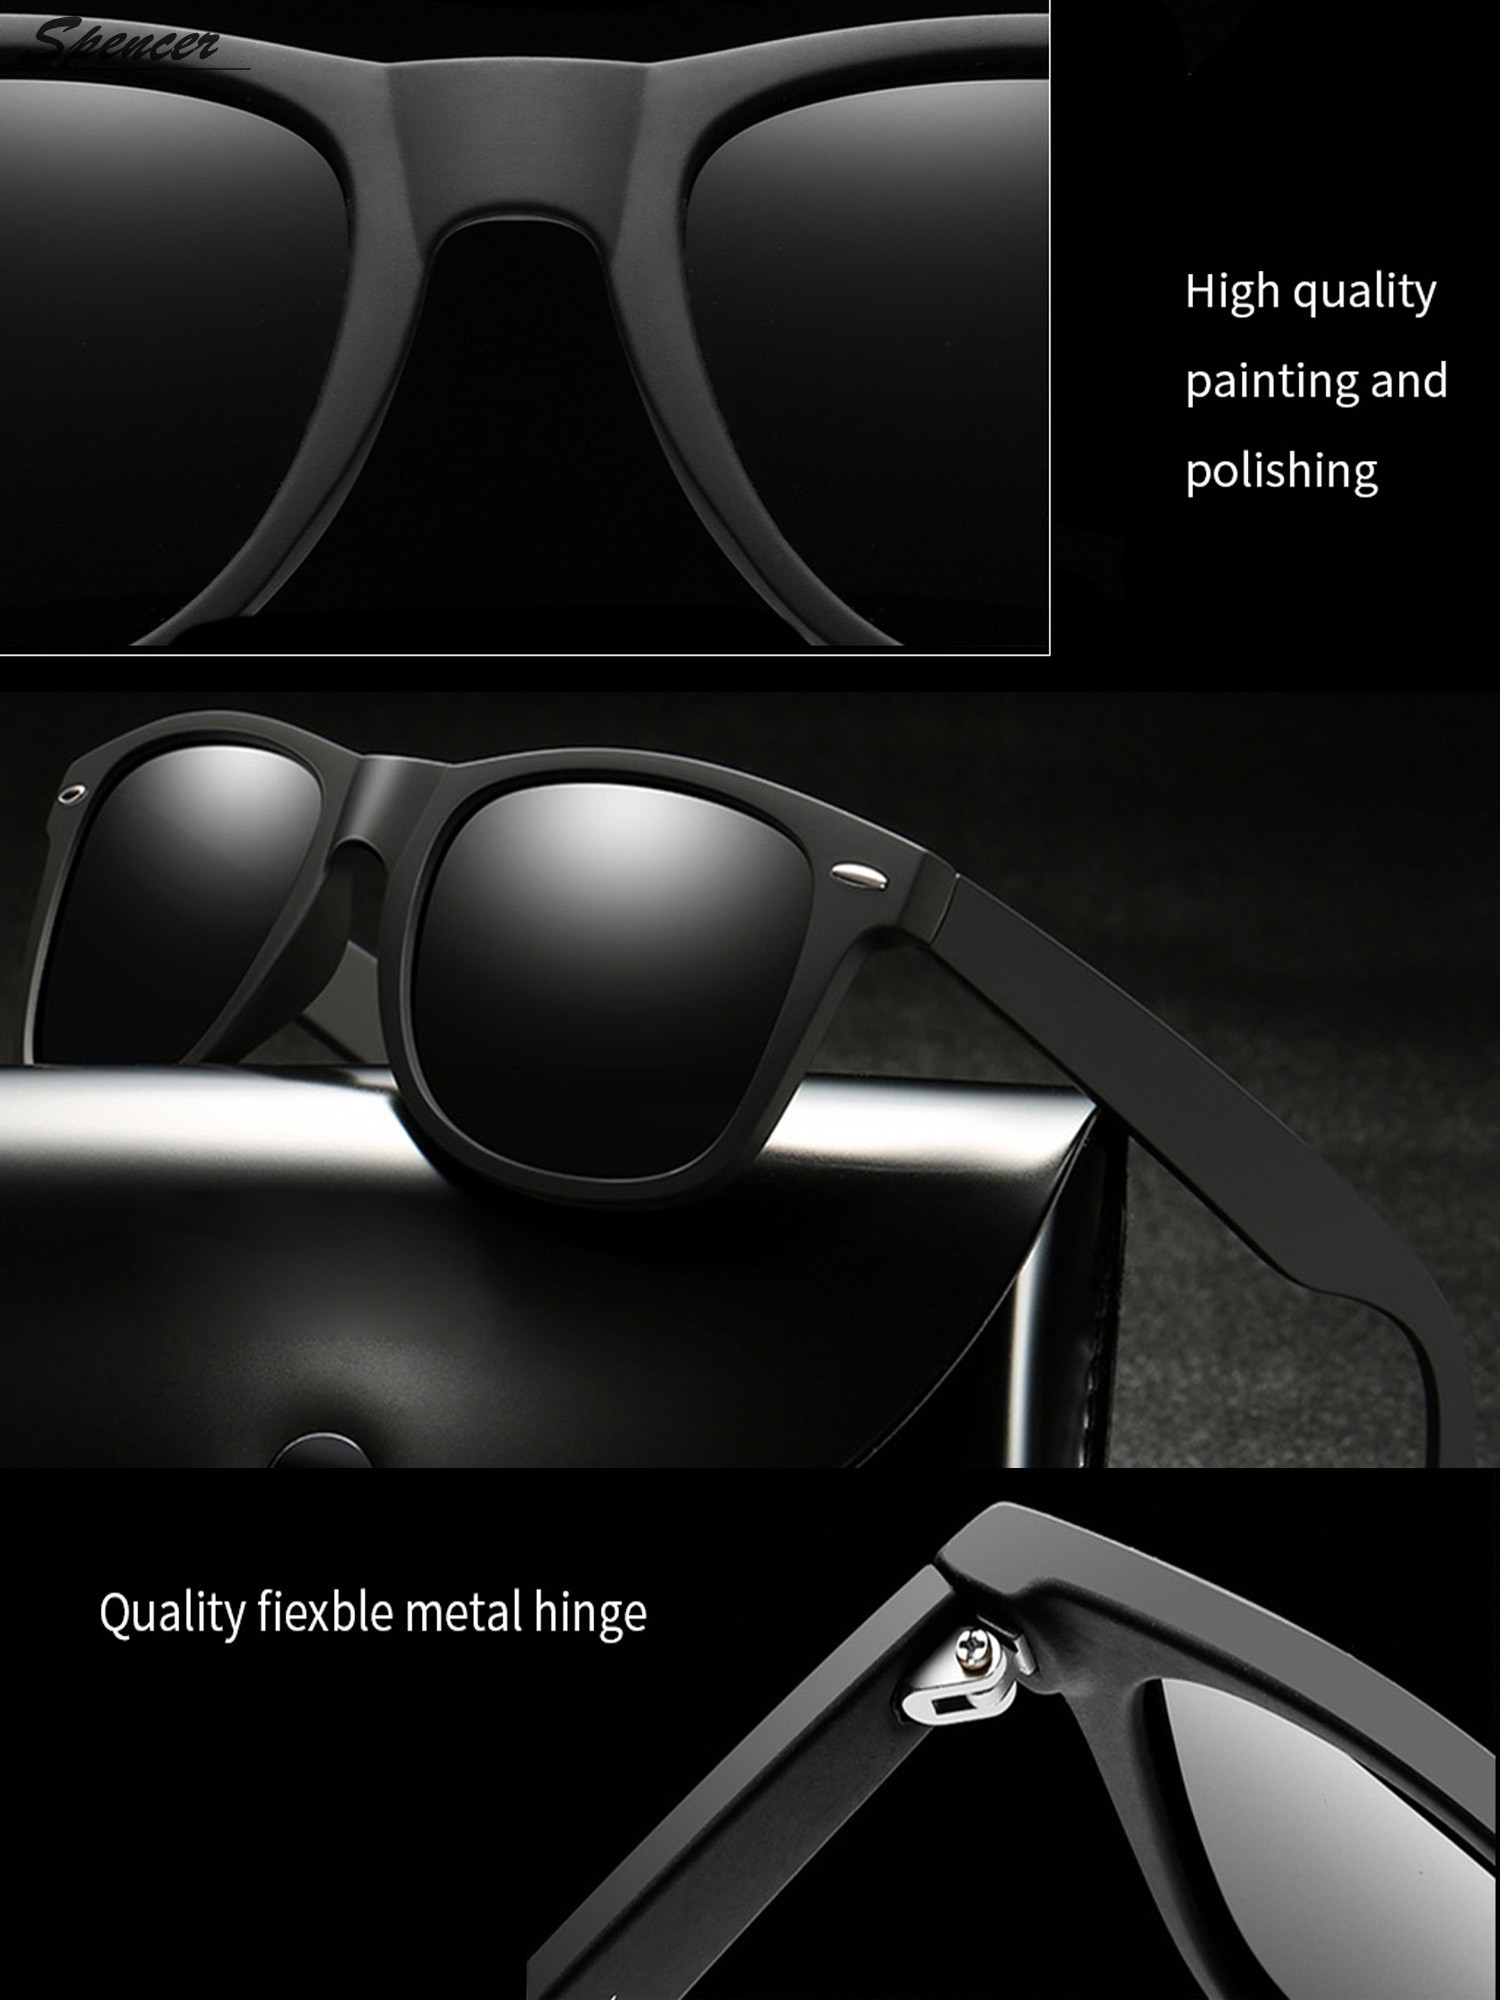 Spencer Retro HD Polarized Colored Mirrored Lens Sunglasses Ultralight Driving UV400 Eyewear Glasses for Men Women "Black+Gray " - image 4 of 6